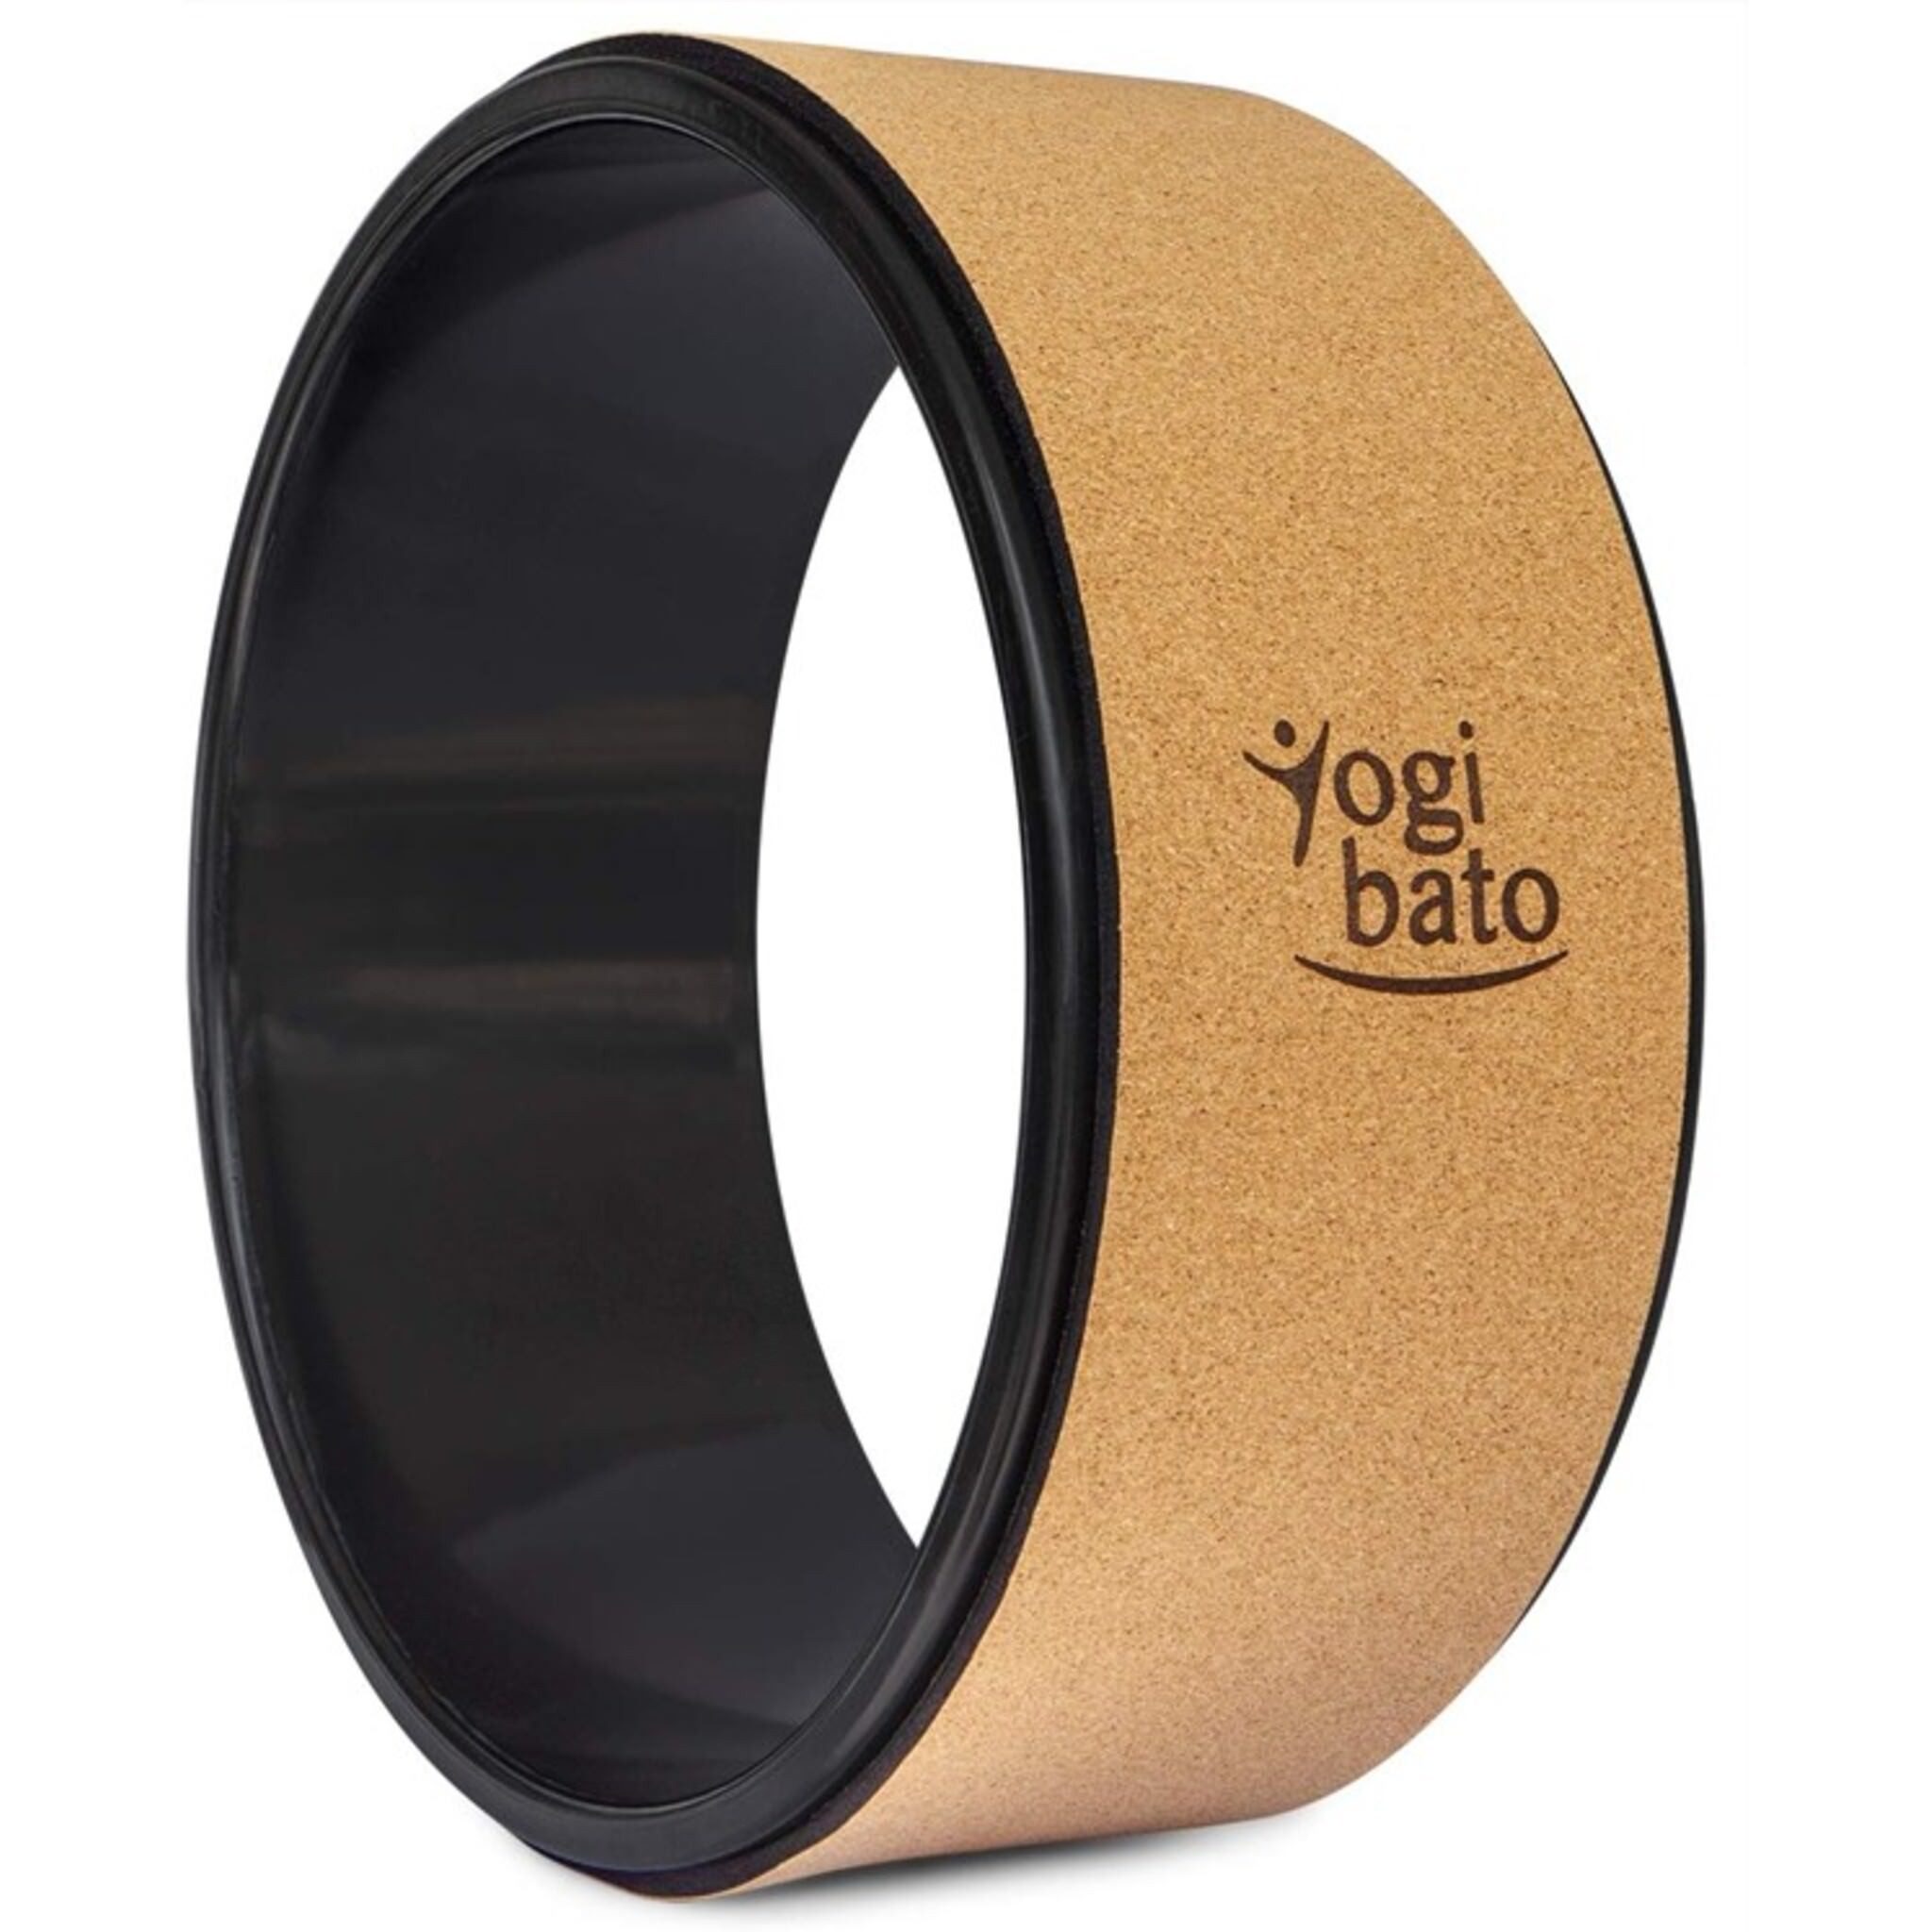 Techlando Yoga-Rad Yogibato Yogarad Kork – Dharma Rad Fitness Pilates